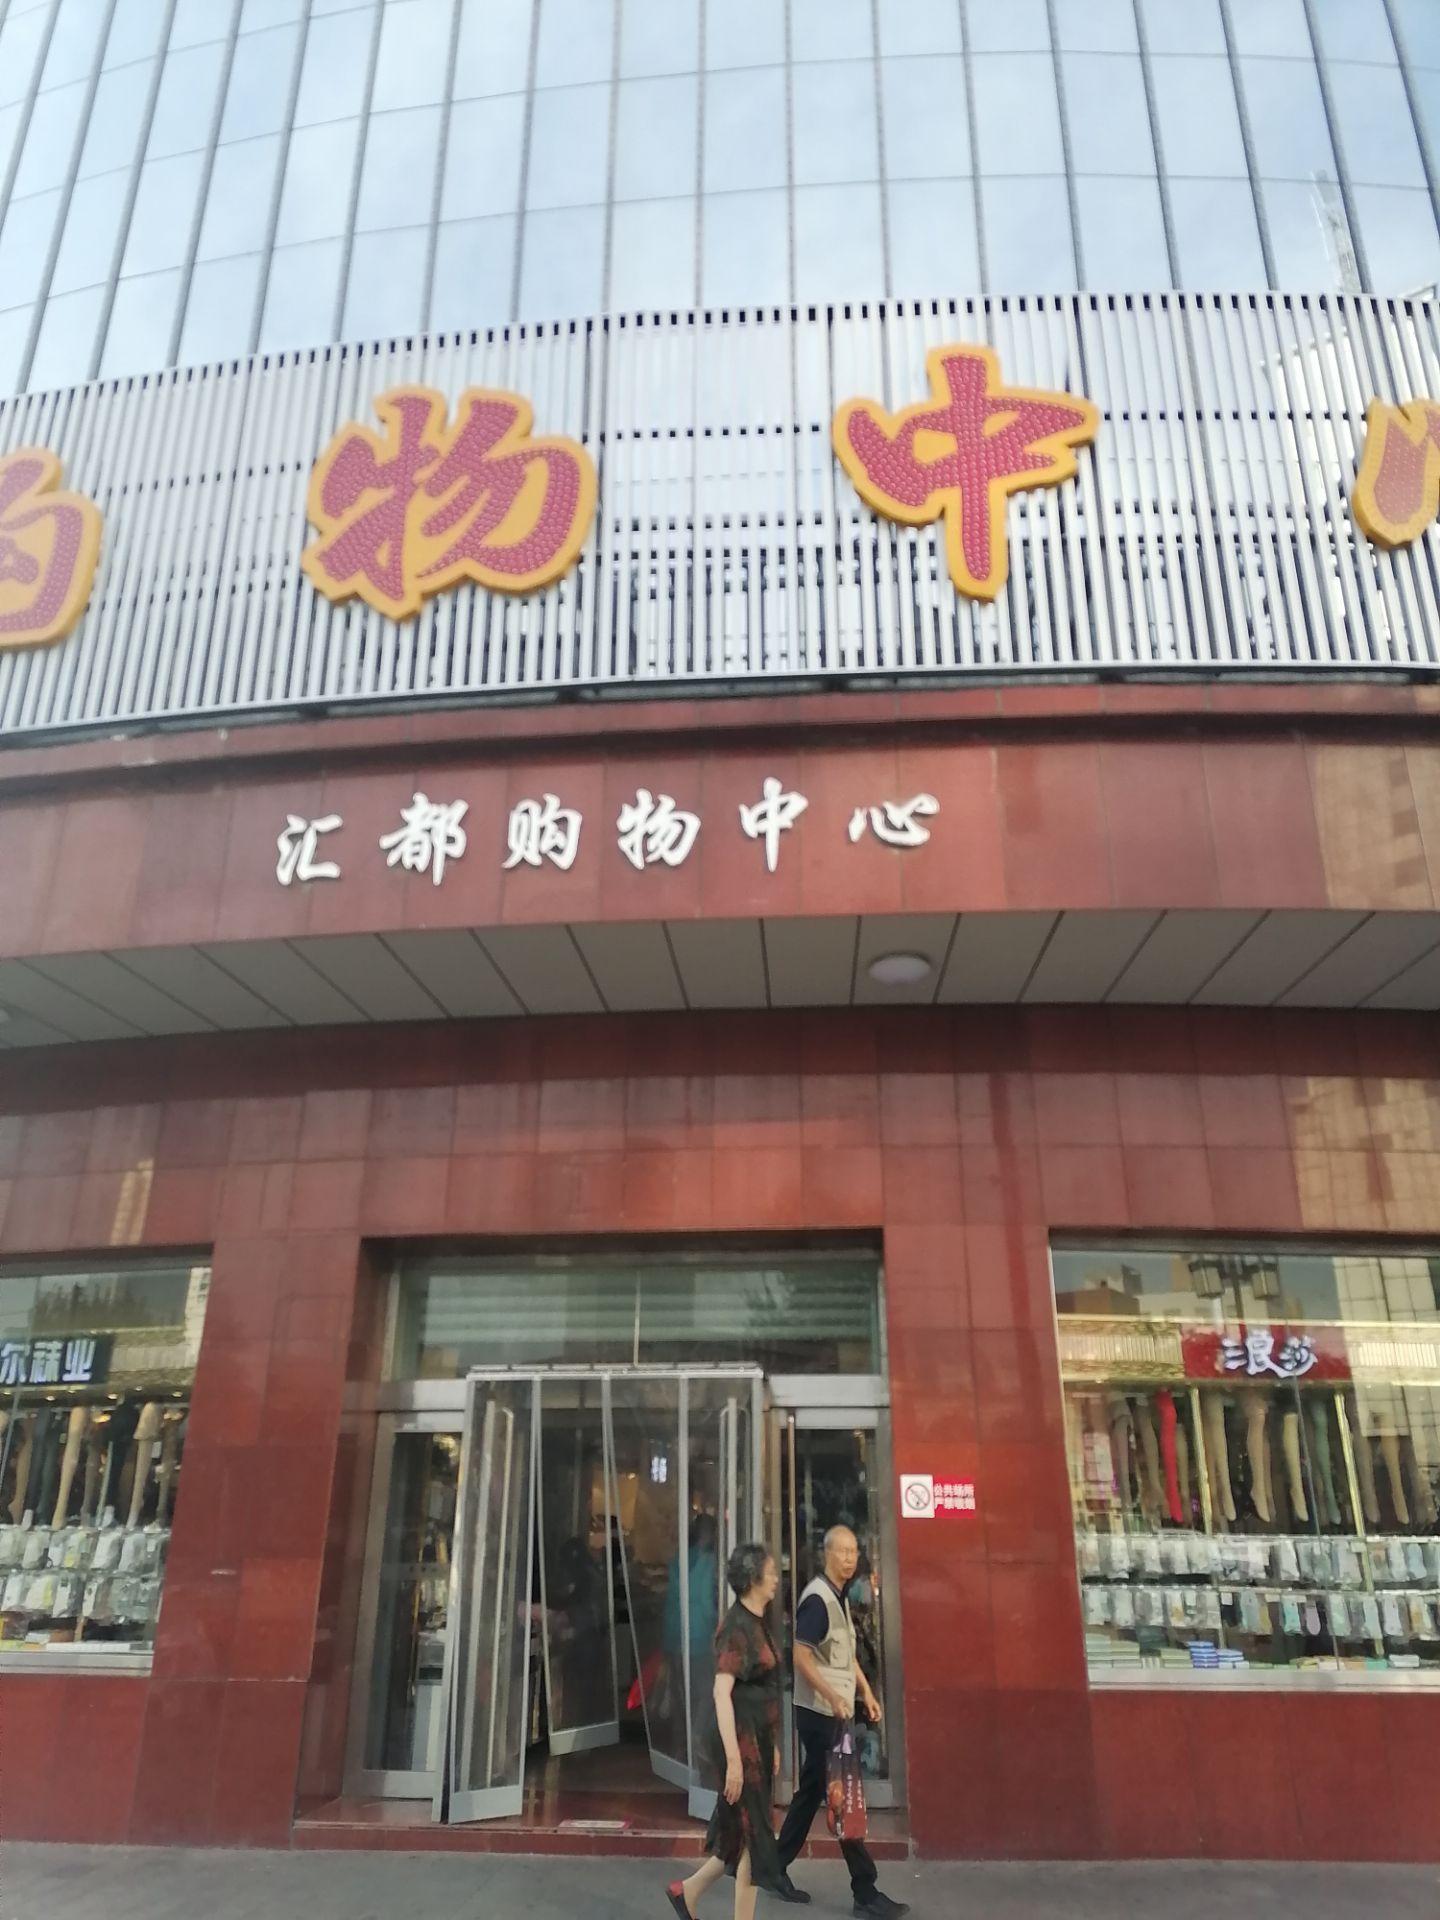 【携程攻略】太原汇都购物中心购物,这座百货大楼位于太原市中心五一